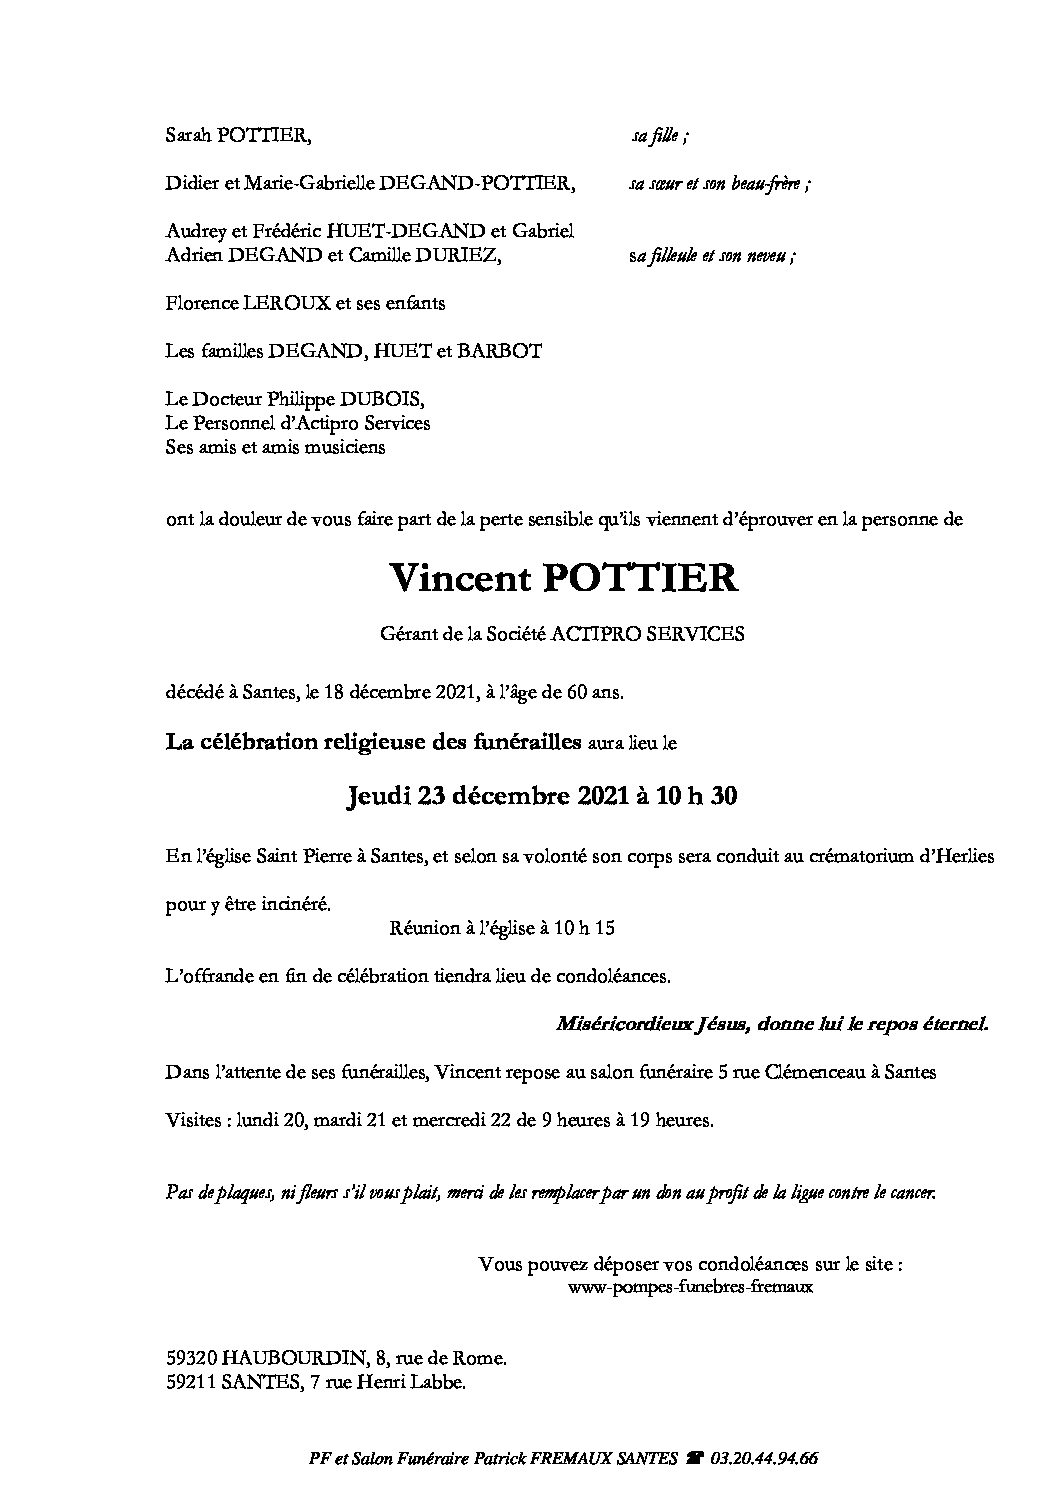 Monsieur Vincent POTTIER